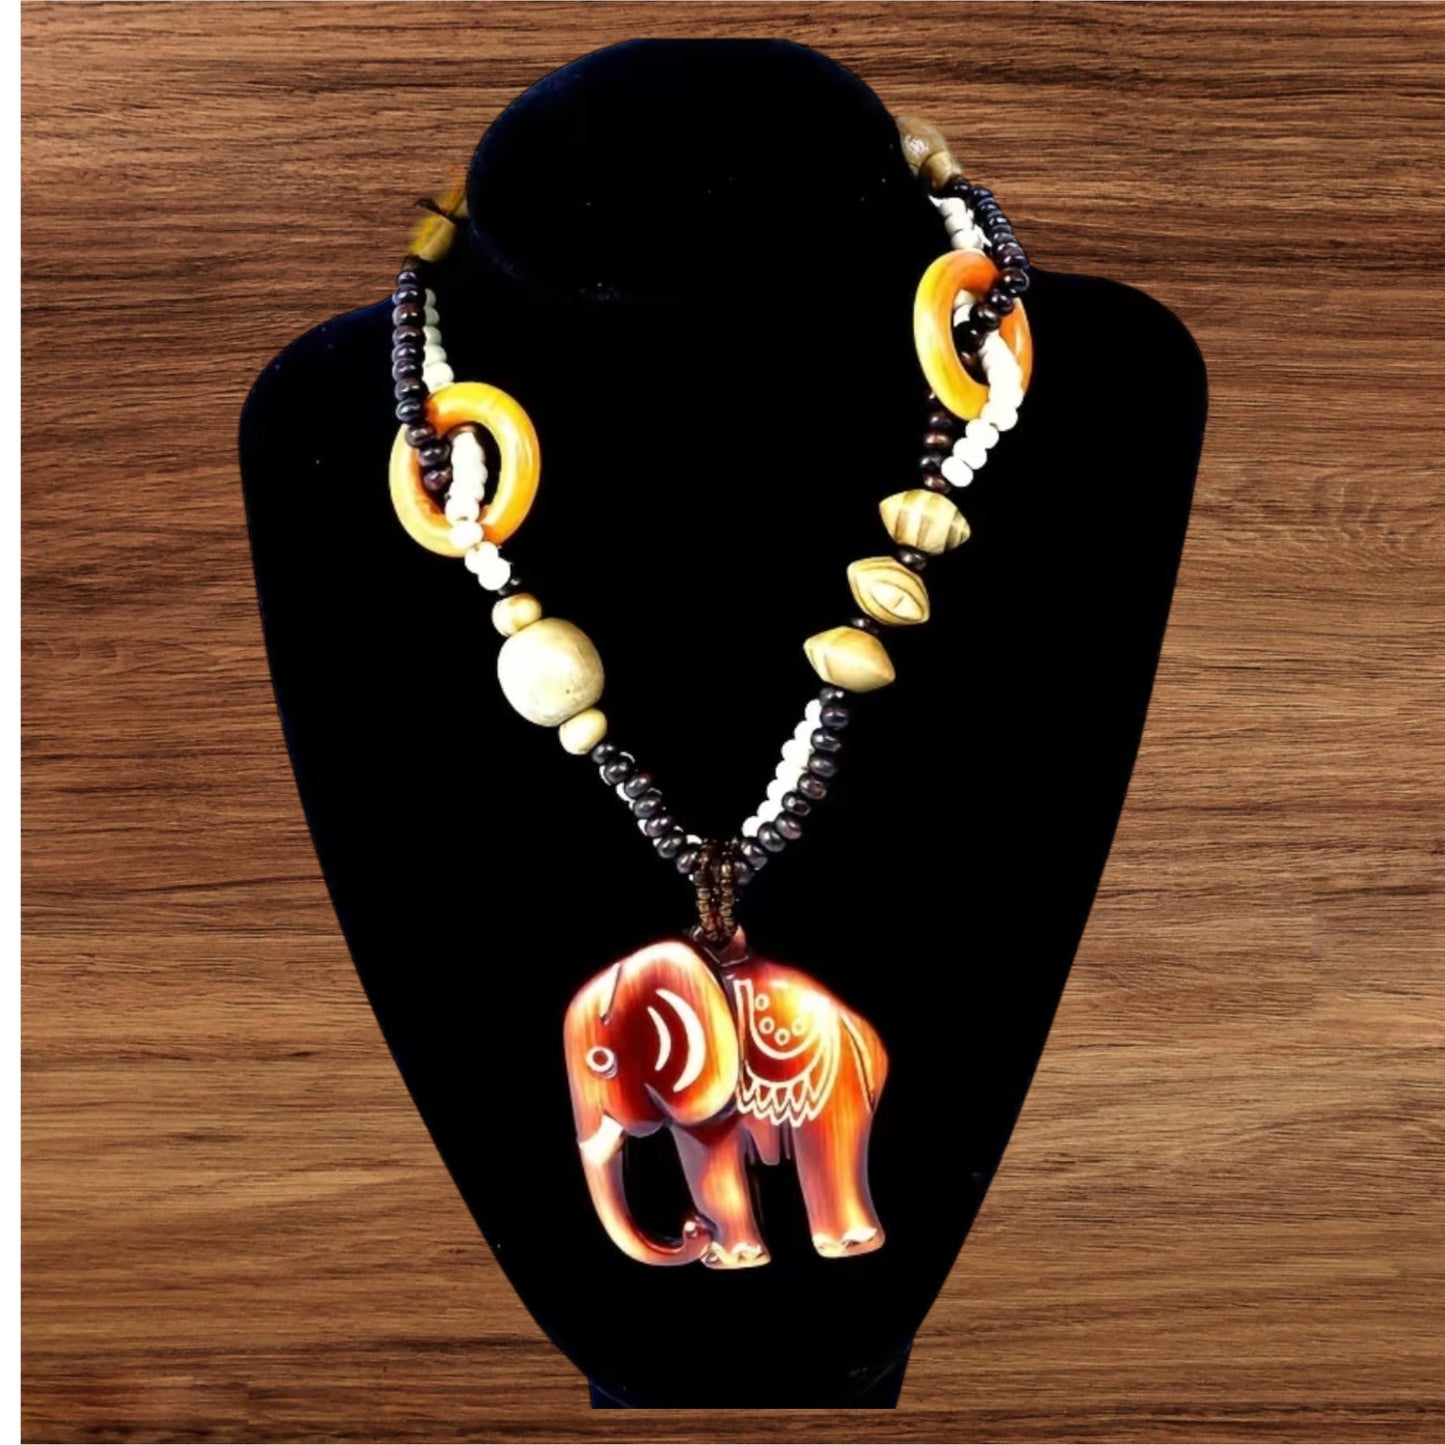 Boho Large Elephant Necklace Wood and Beads